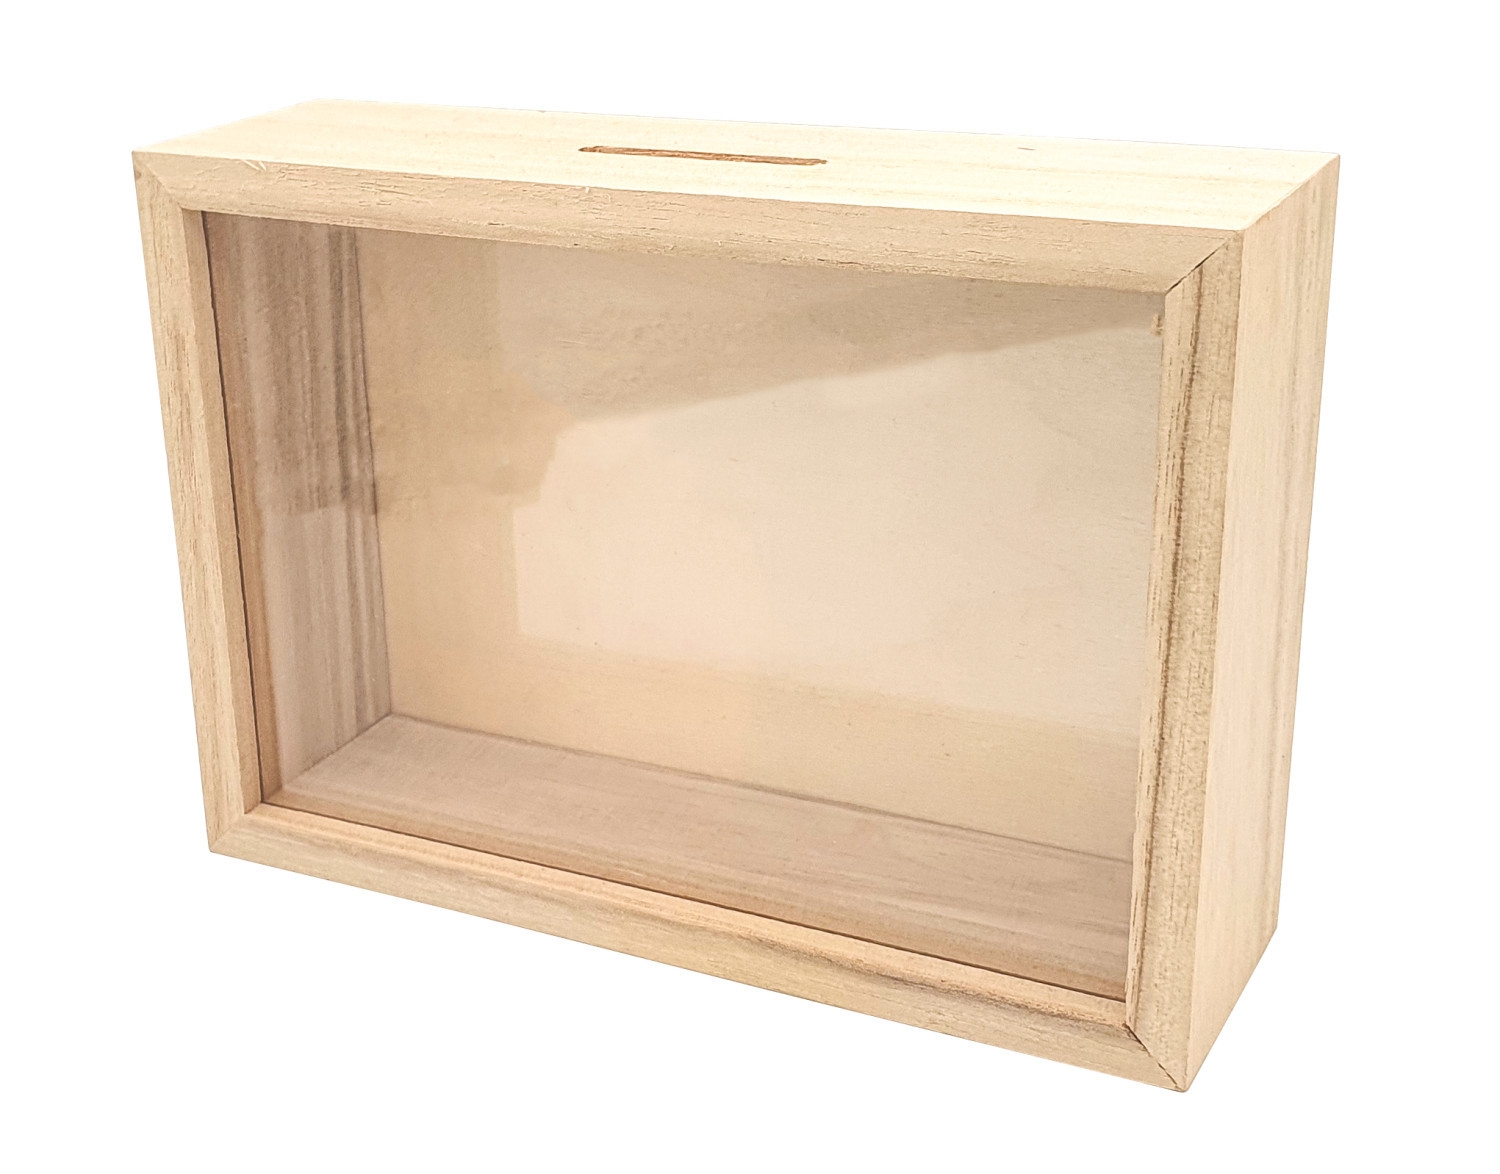 Tirelire en bois avec fenêtre 17 x 12 x 5 cm - MegaCrea Ref 7626